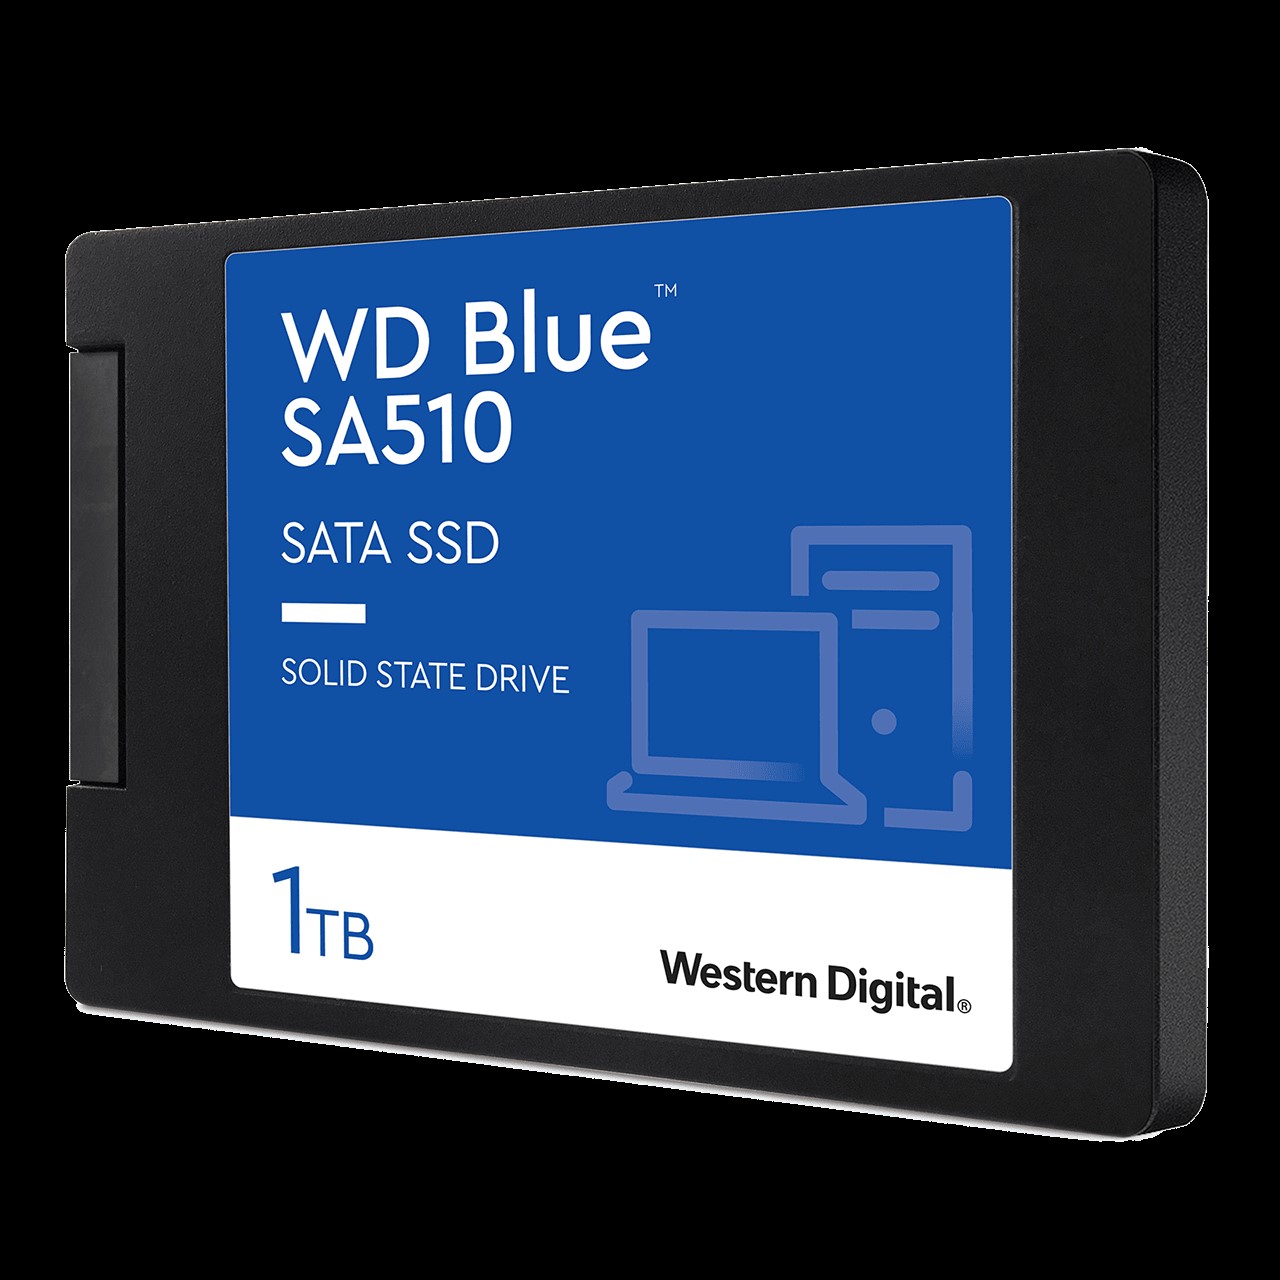 UNIDAD SSD WESTERN DIGITAL BLUE YODA SA510 1TB SATA 2.5